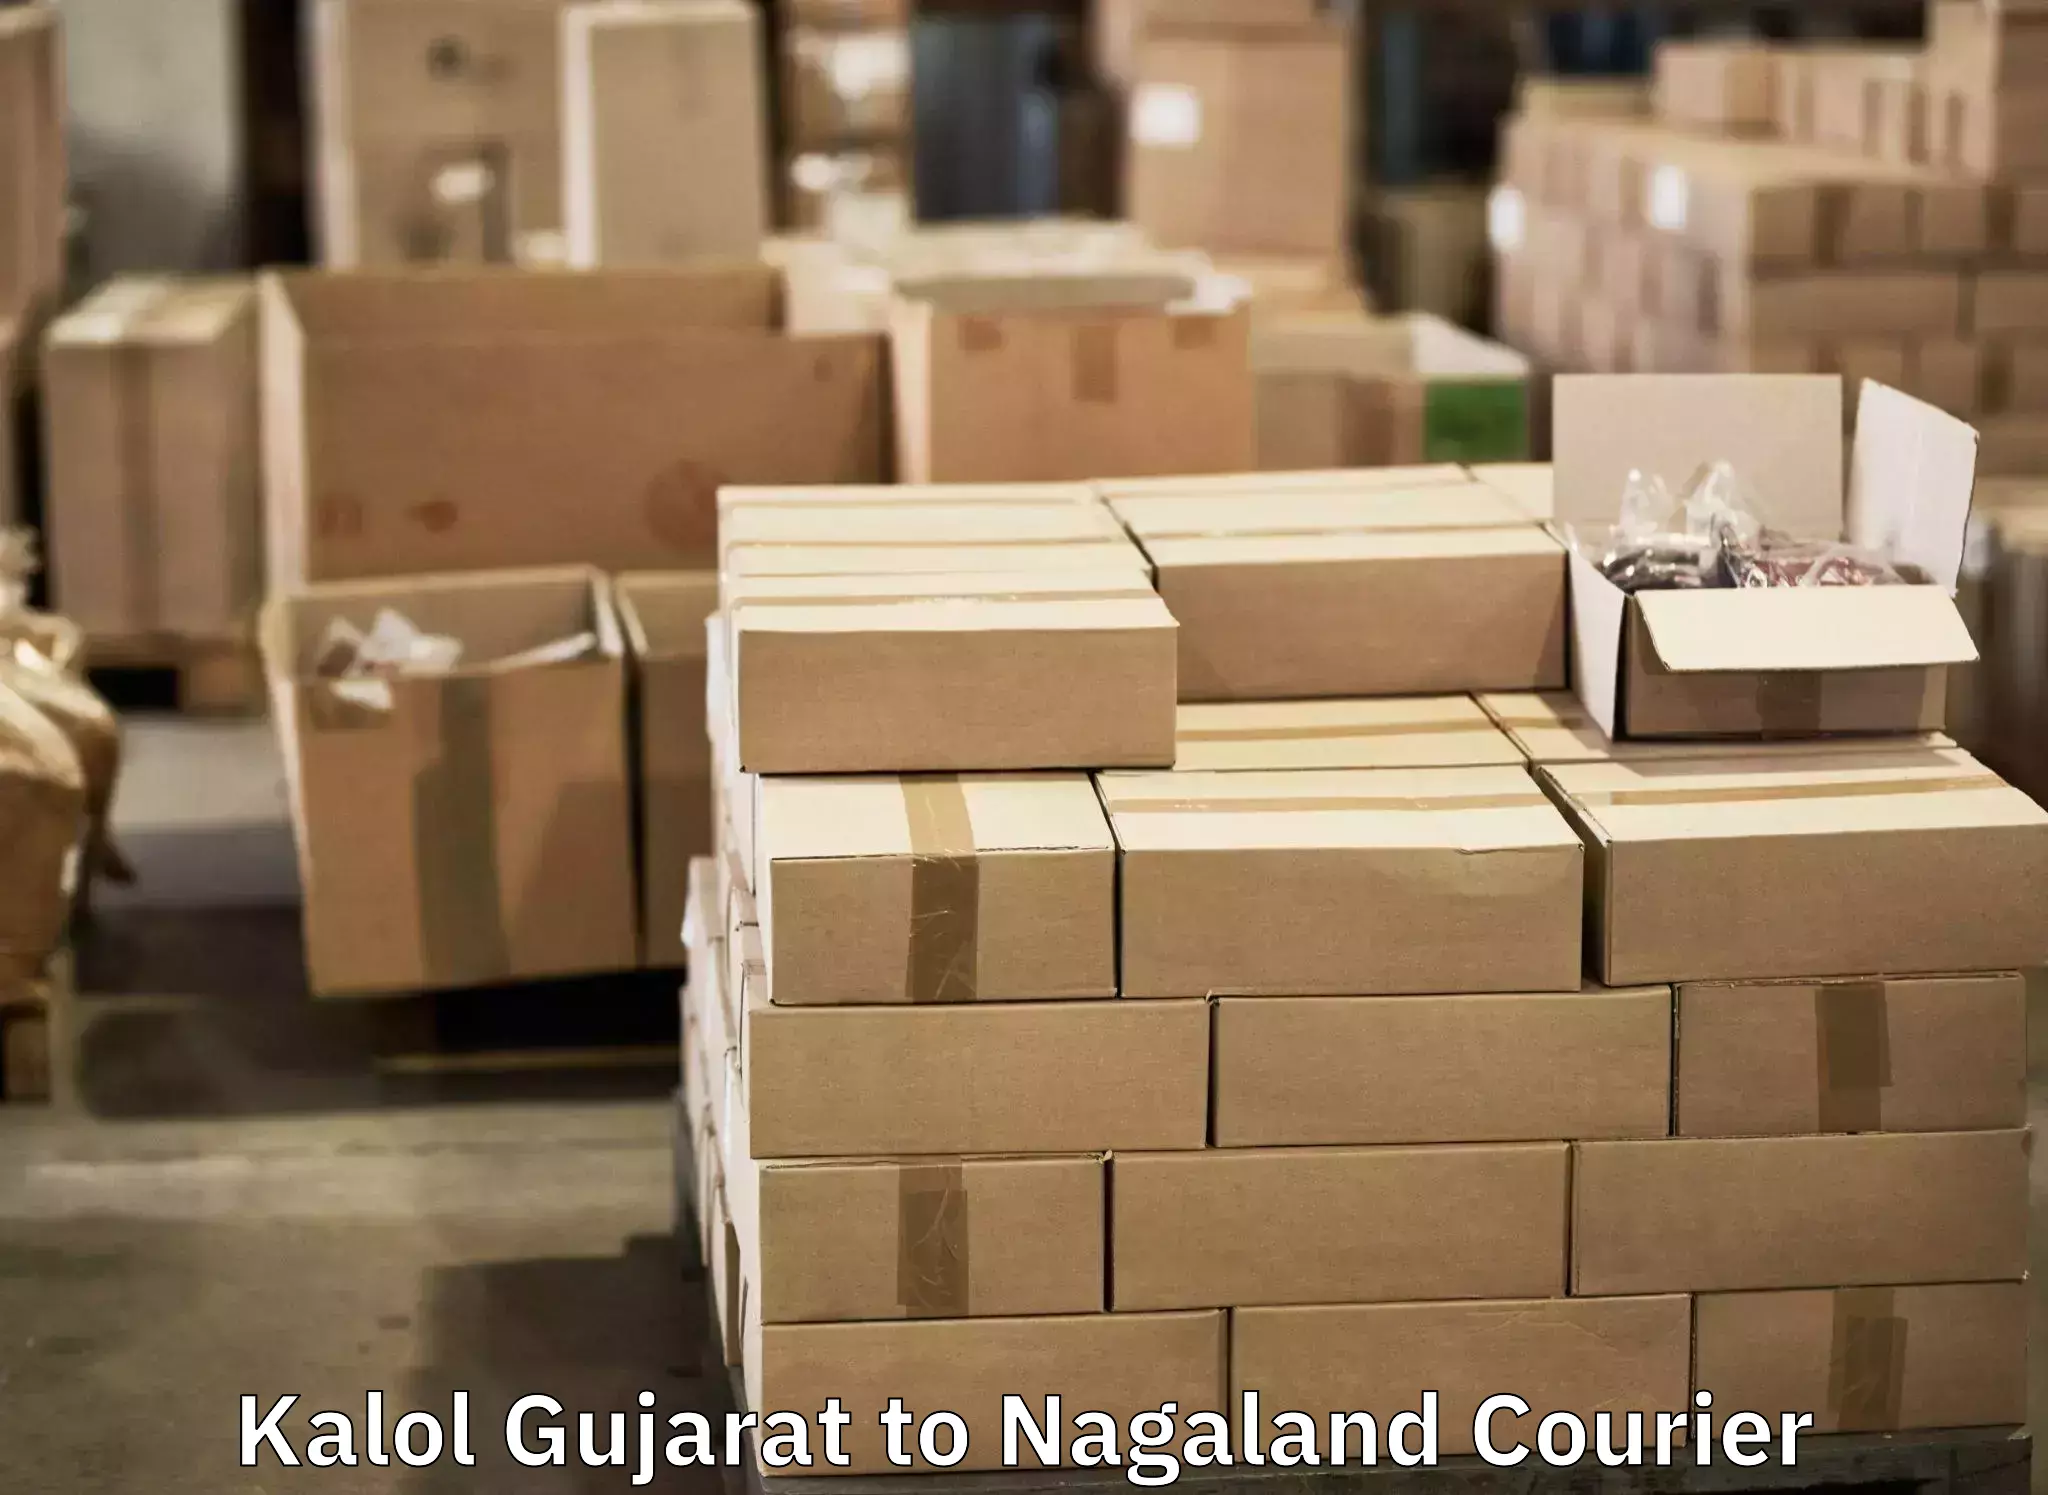 Baggage transport network Kalol Gujarat to Zunheboto